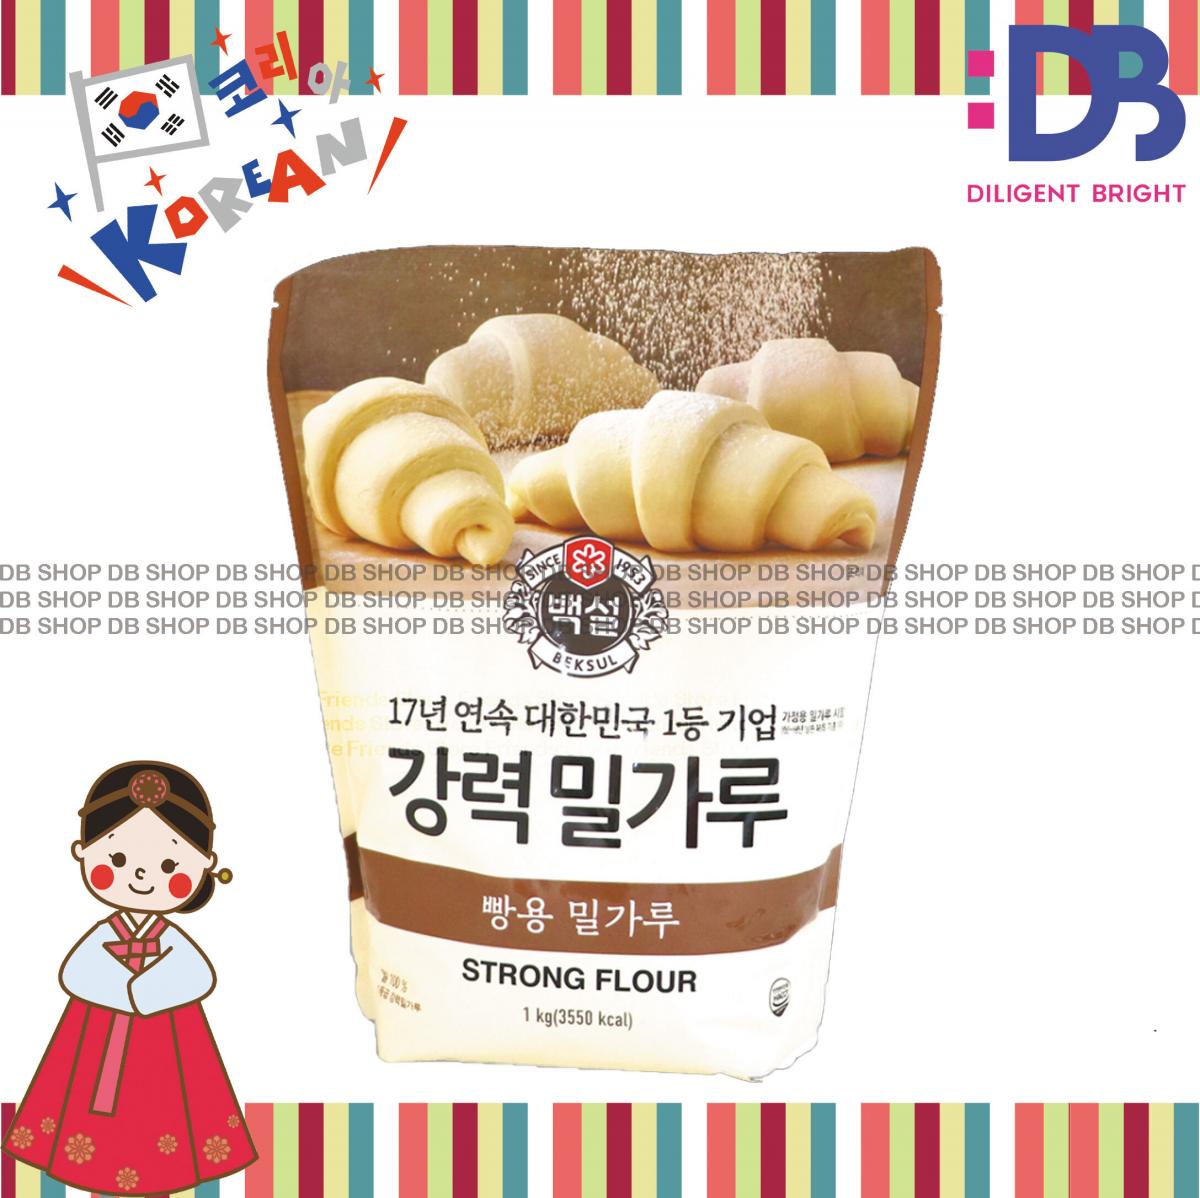 韓國白雪牌 高筋麵粉-麵包 (啡色) (1公斤)   (平行進口)